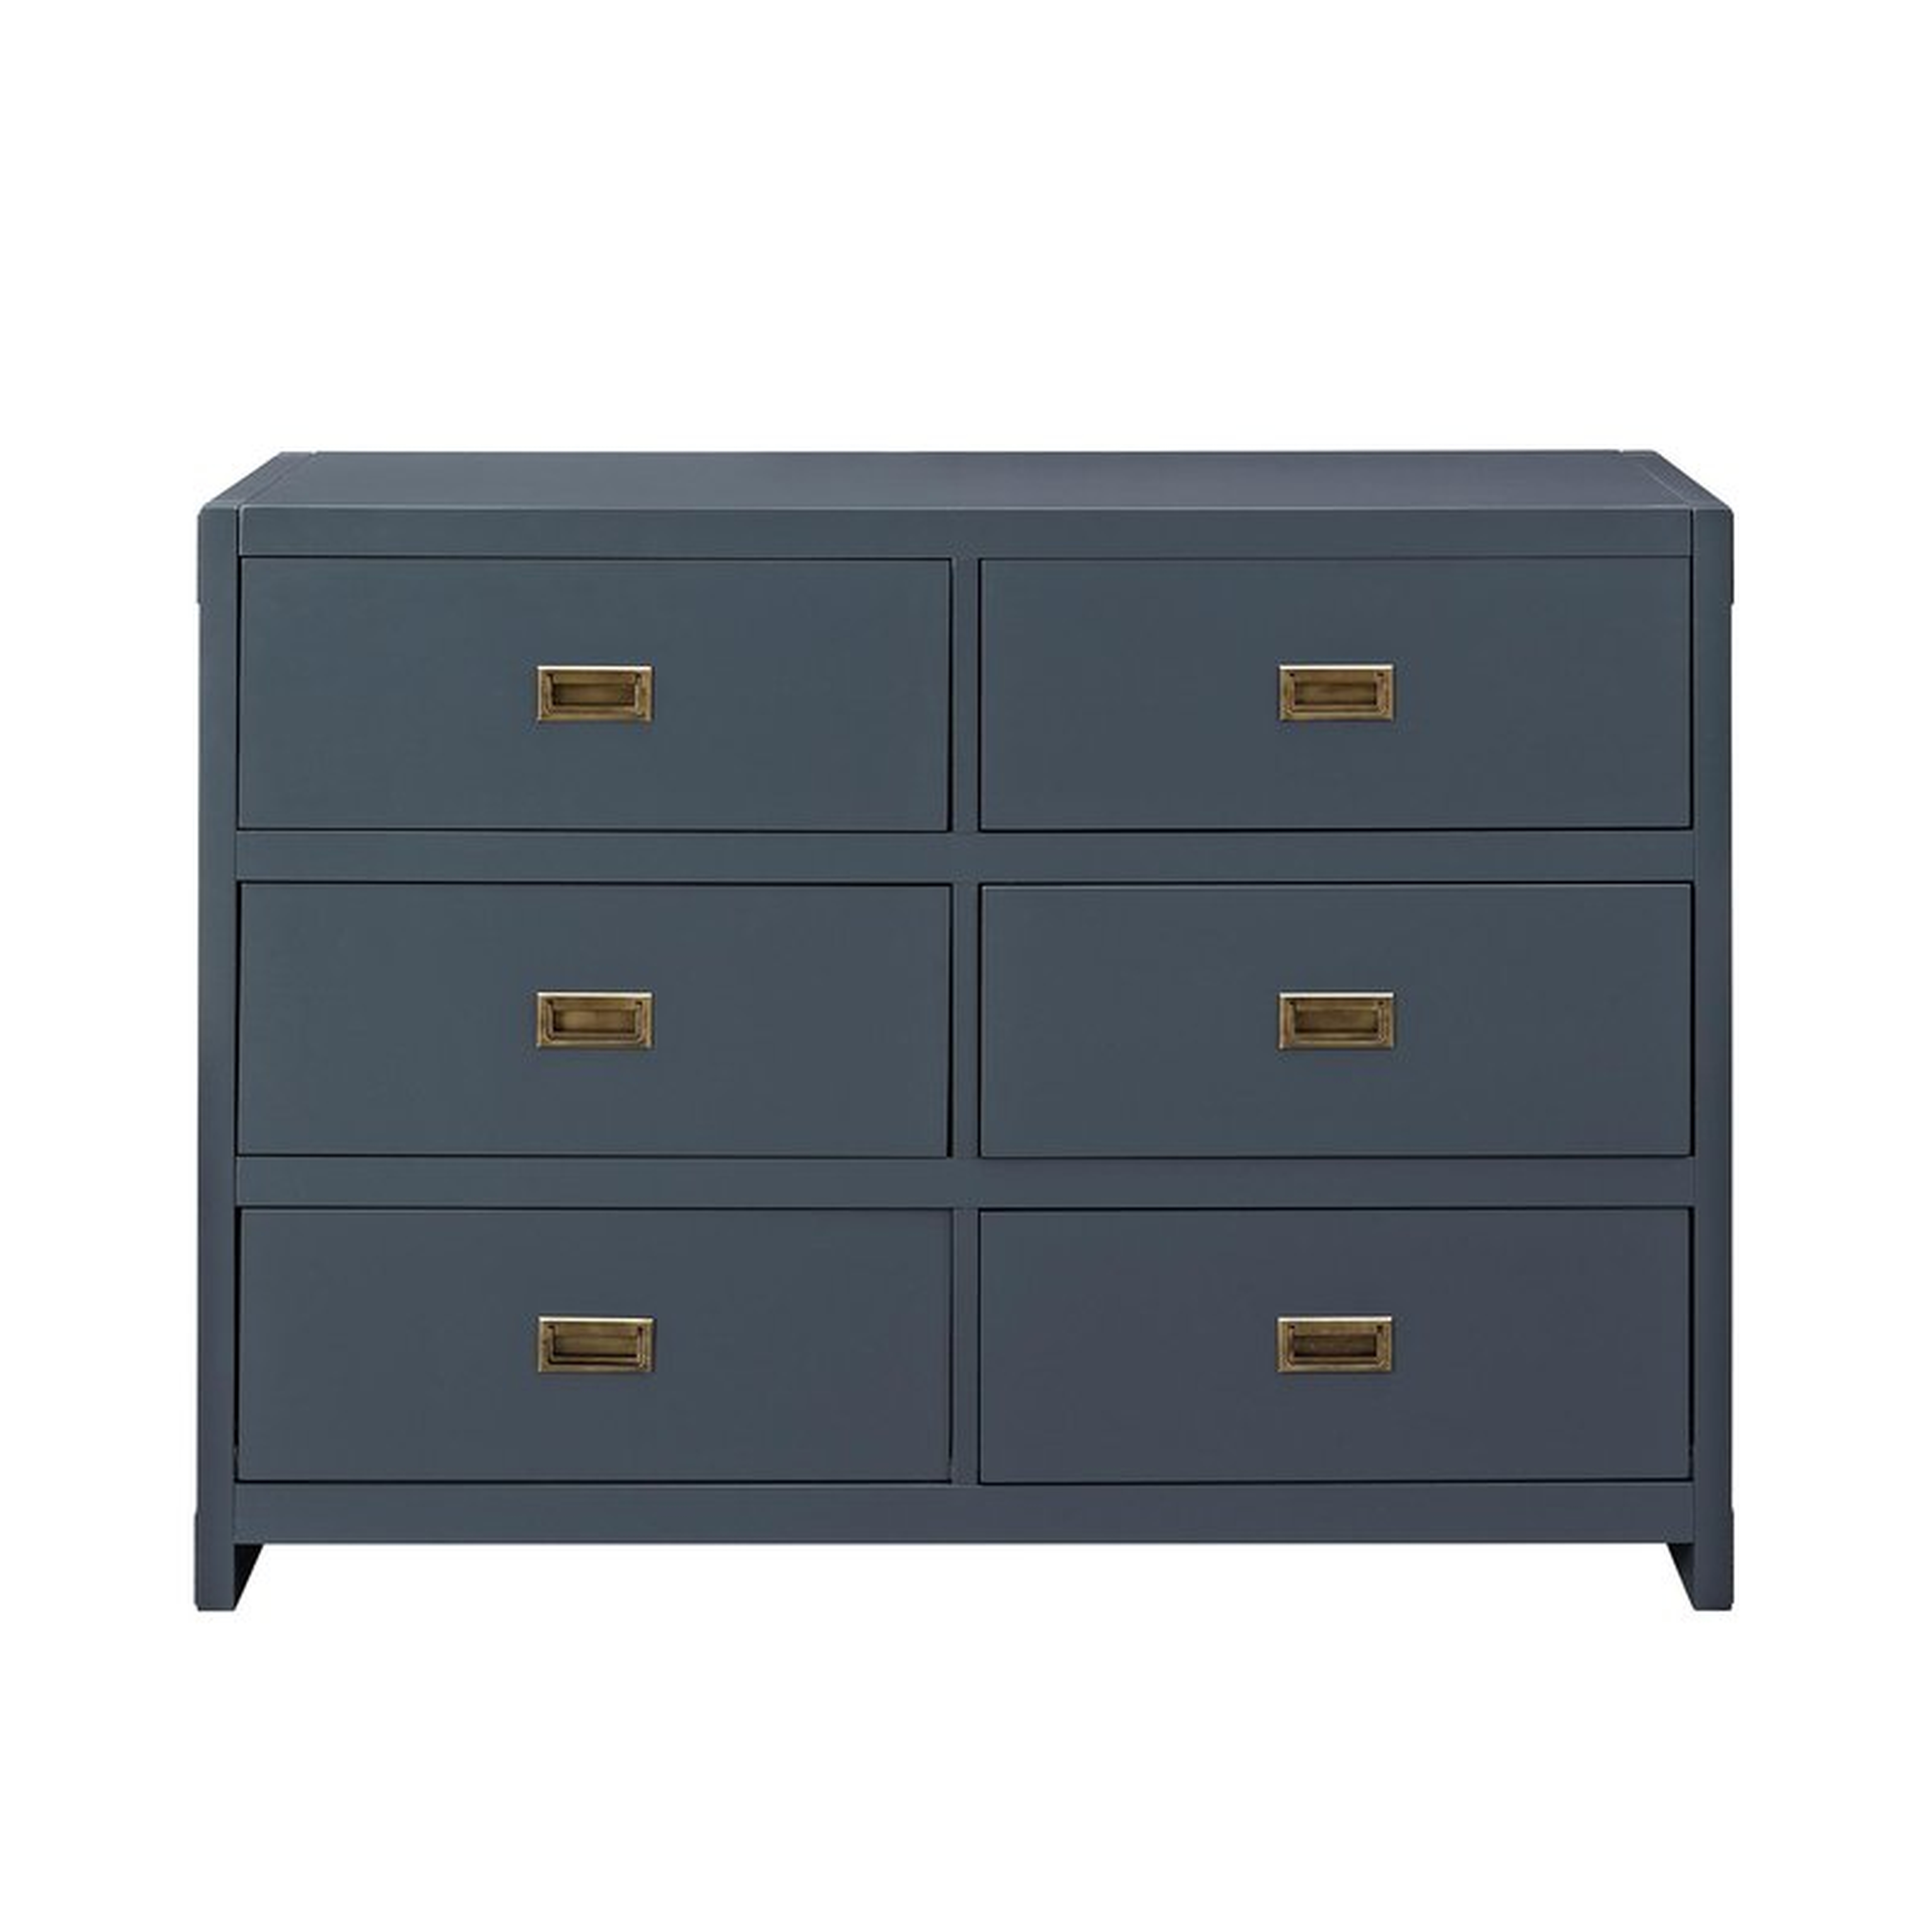 Benbrook 6 Drawer Double Dresser - Graphite Blue - Wayfair